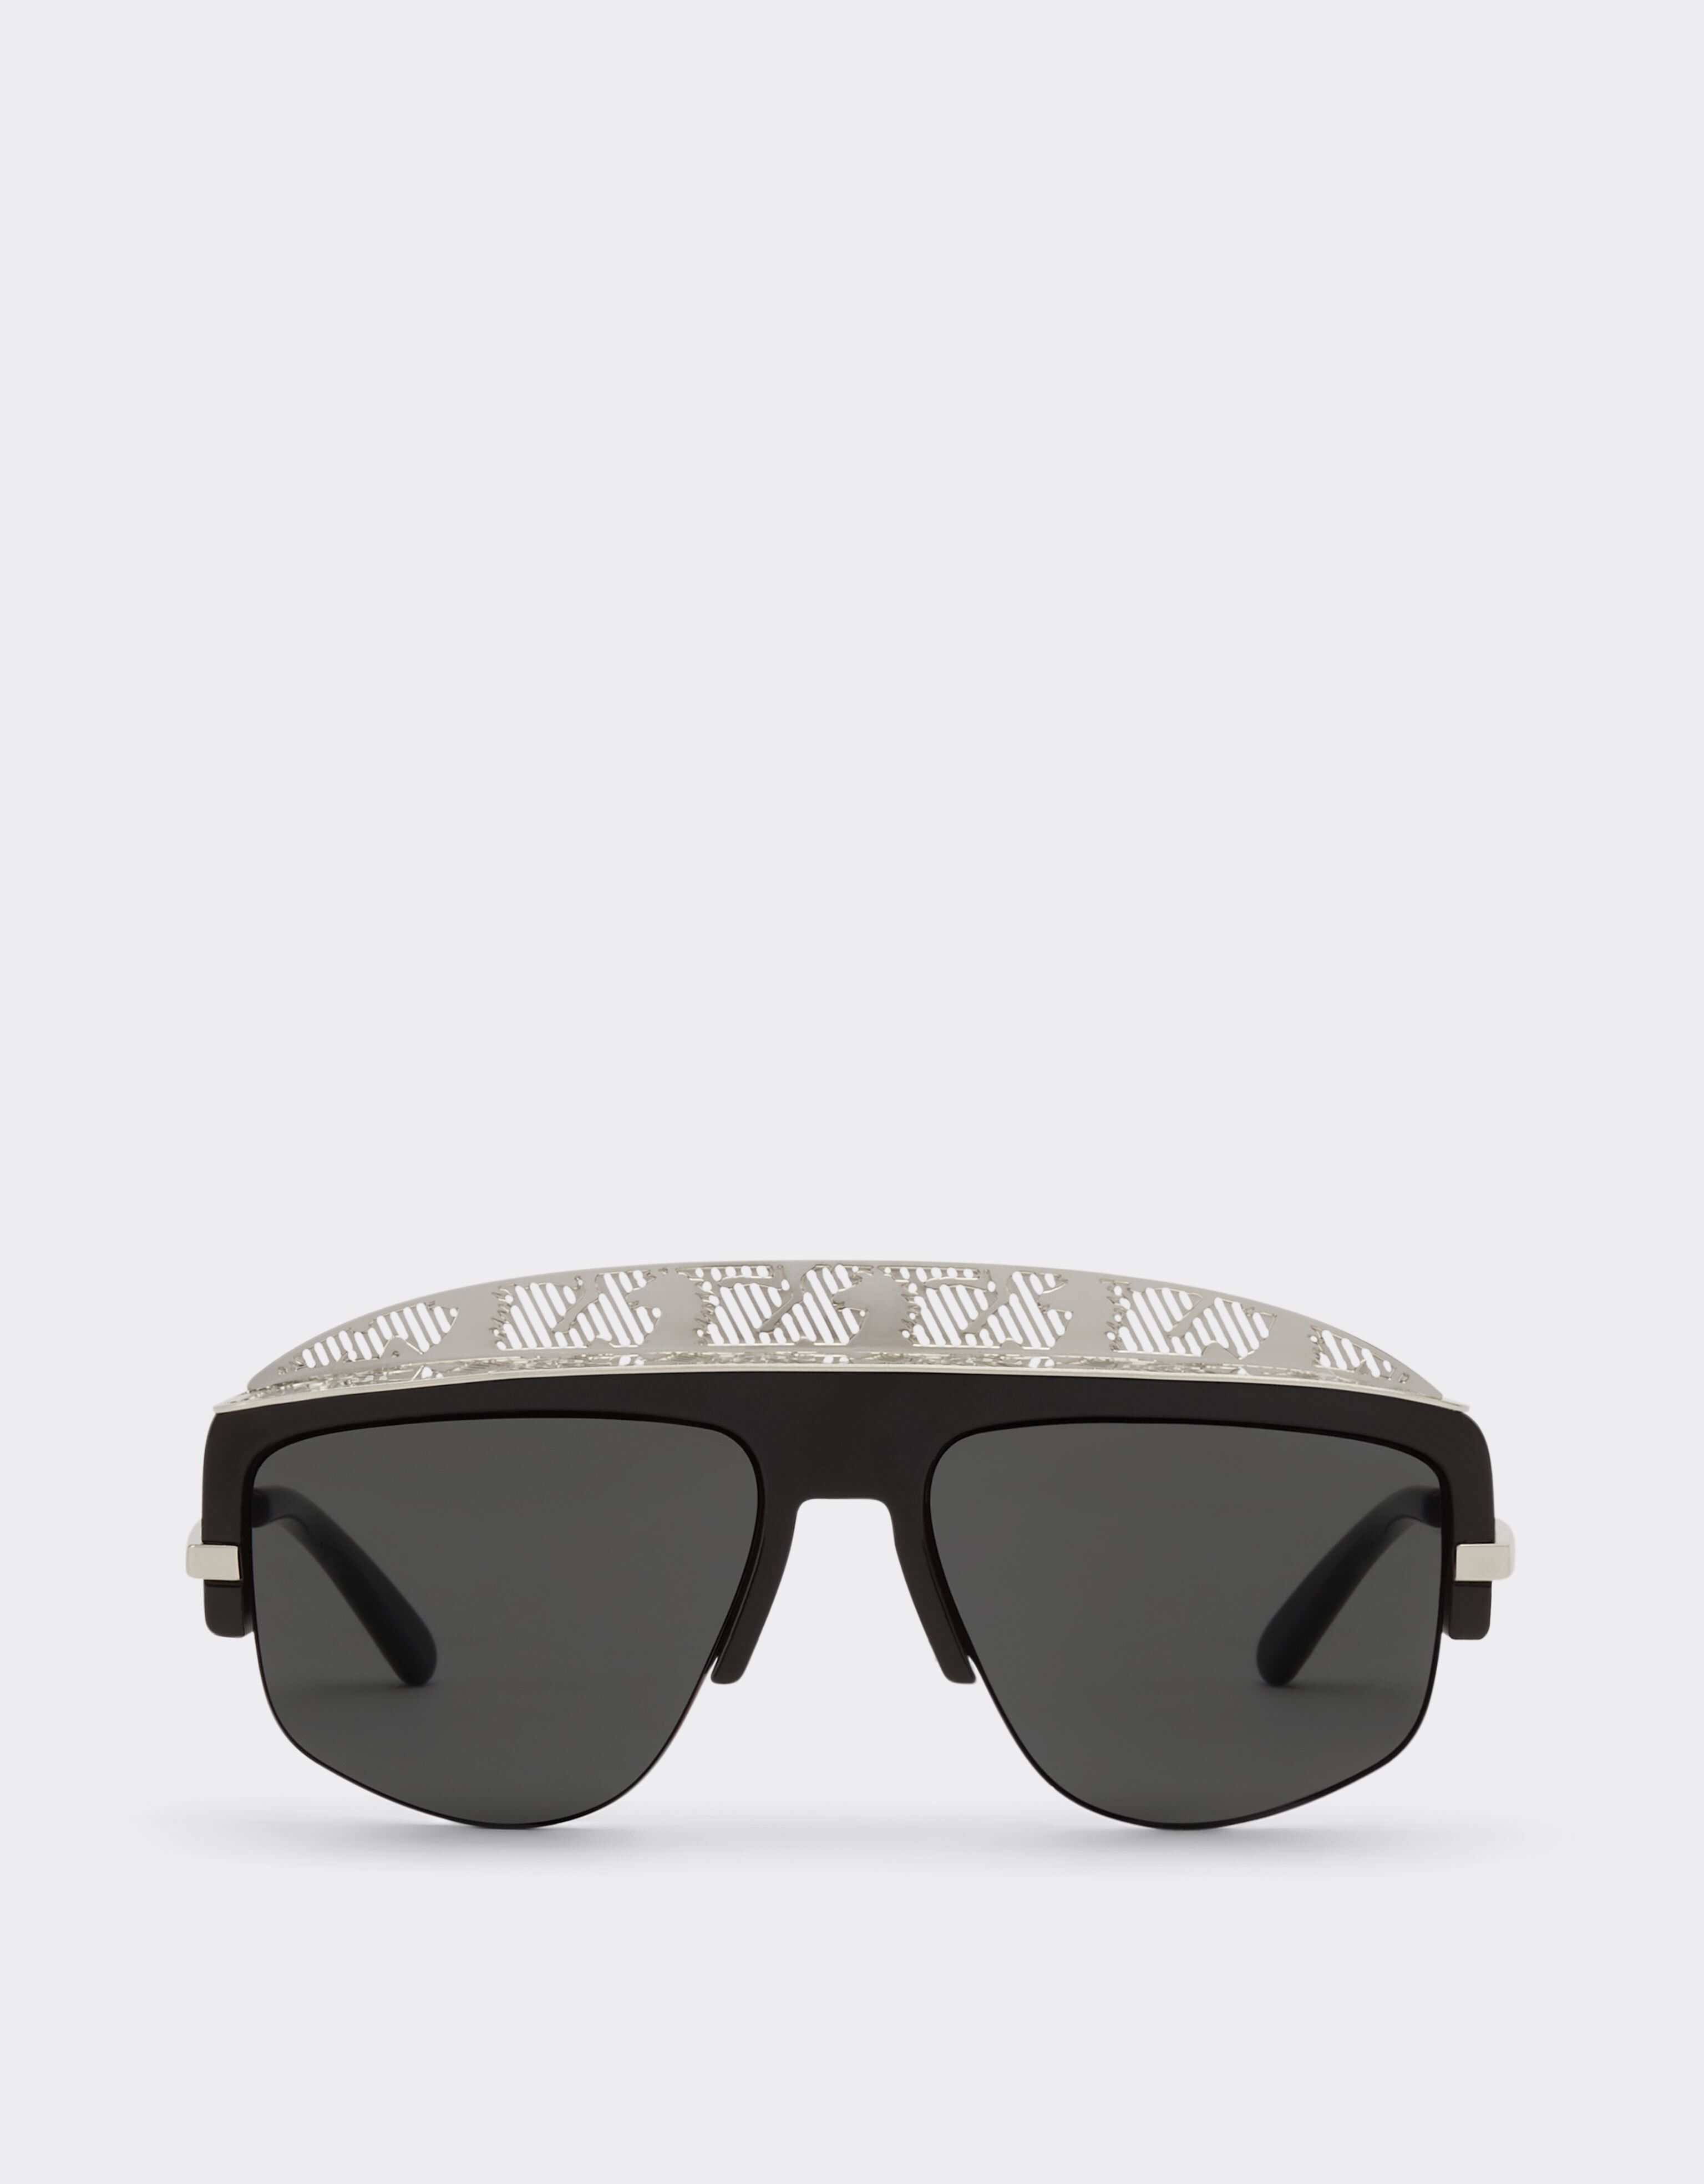 ${brand} Lunettes de soleil masque Ferrari avec verre miroir gris argent ${colorDescription} ${masterID}